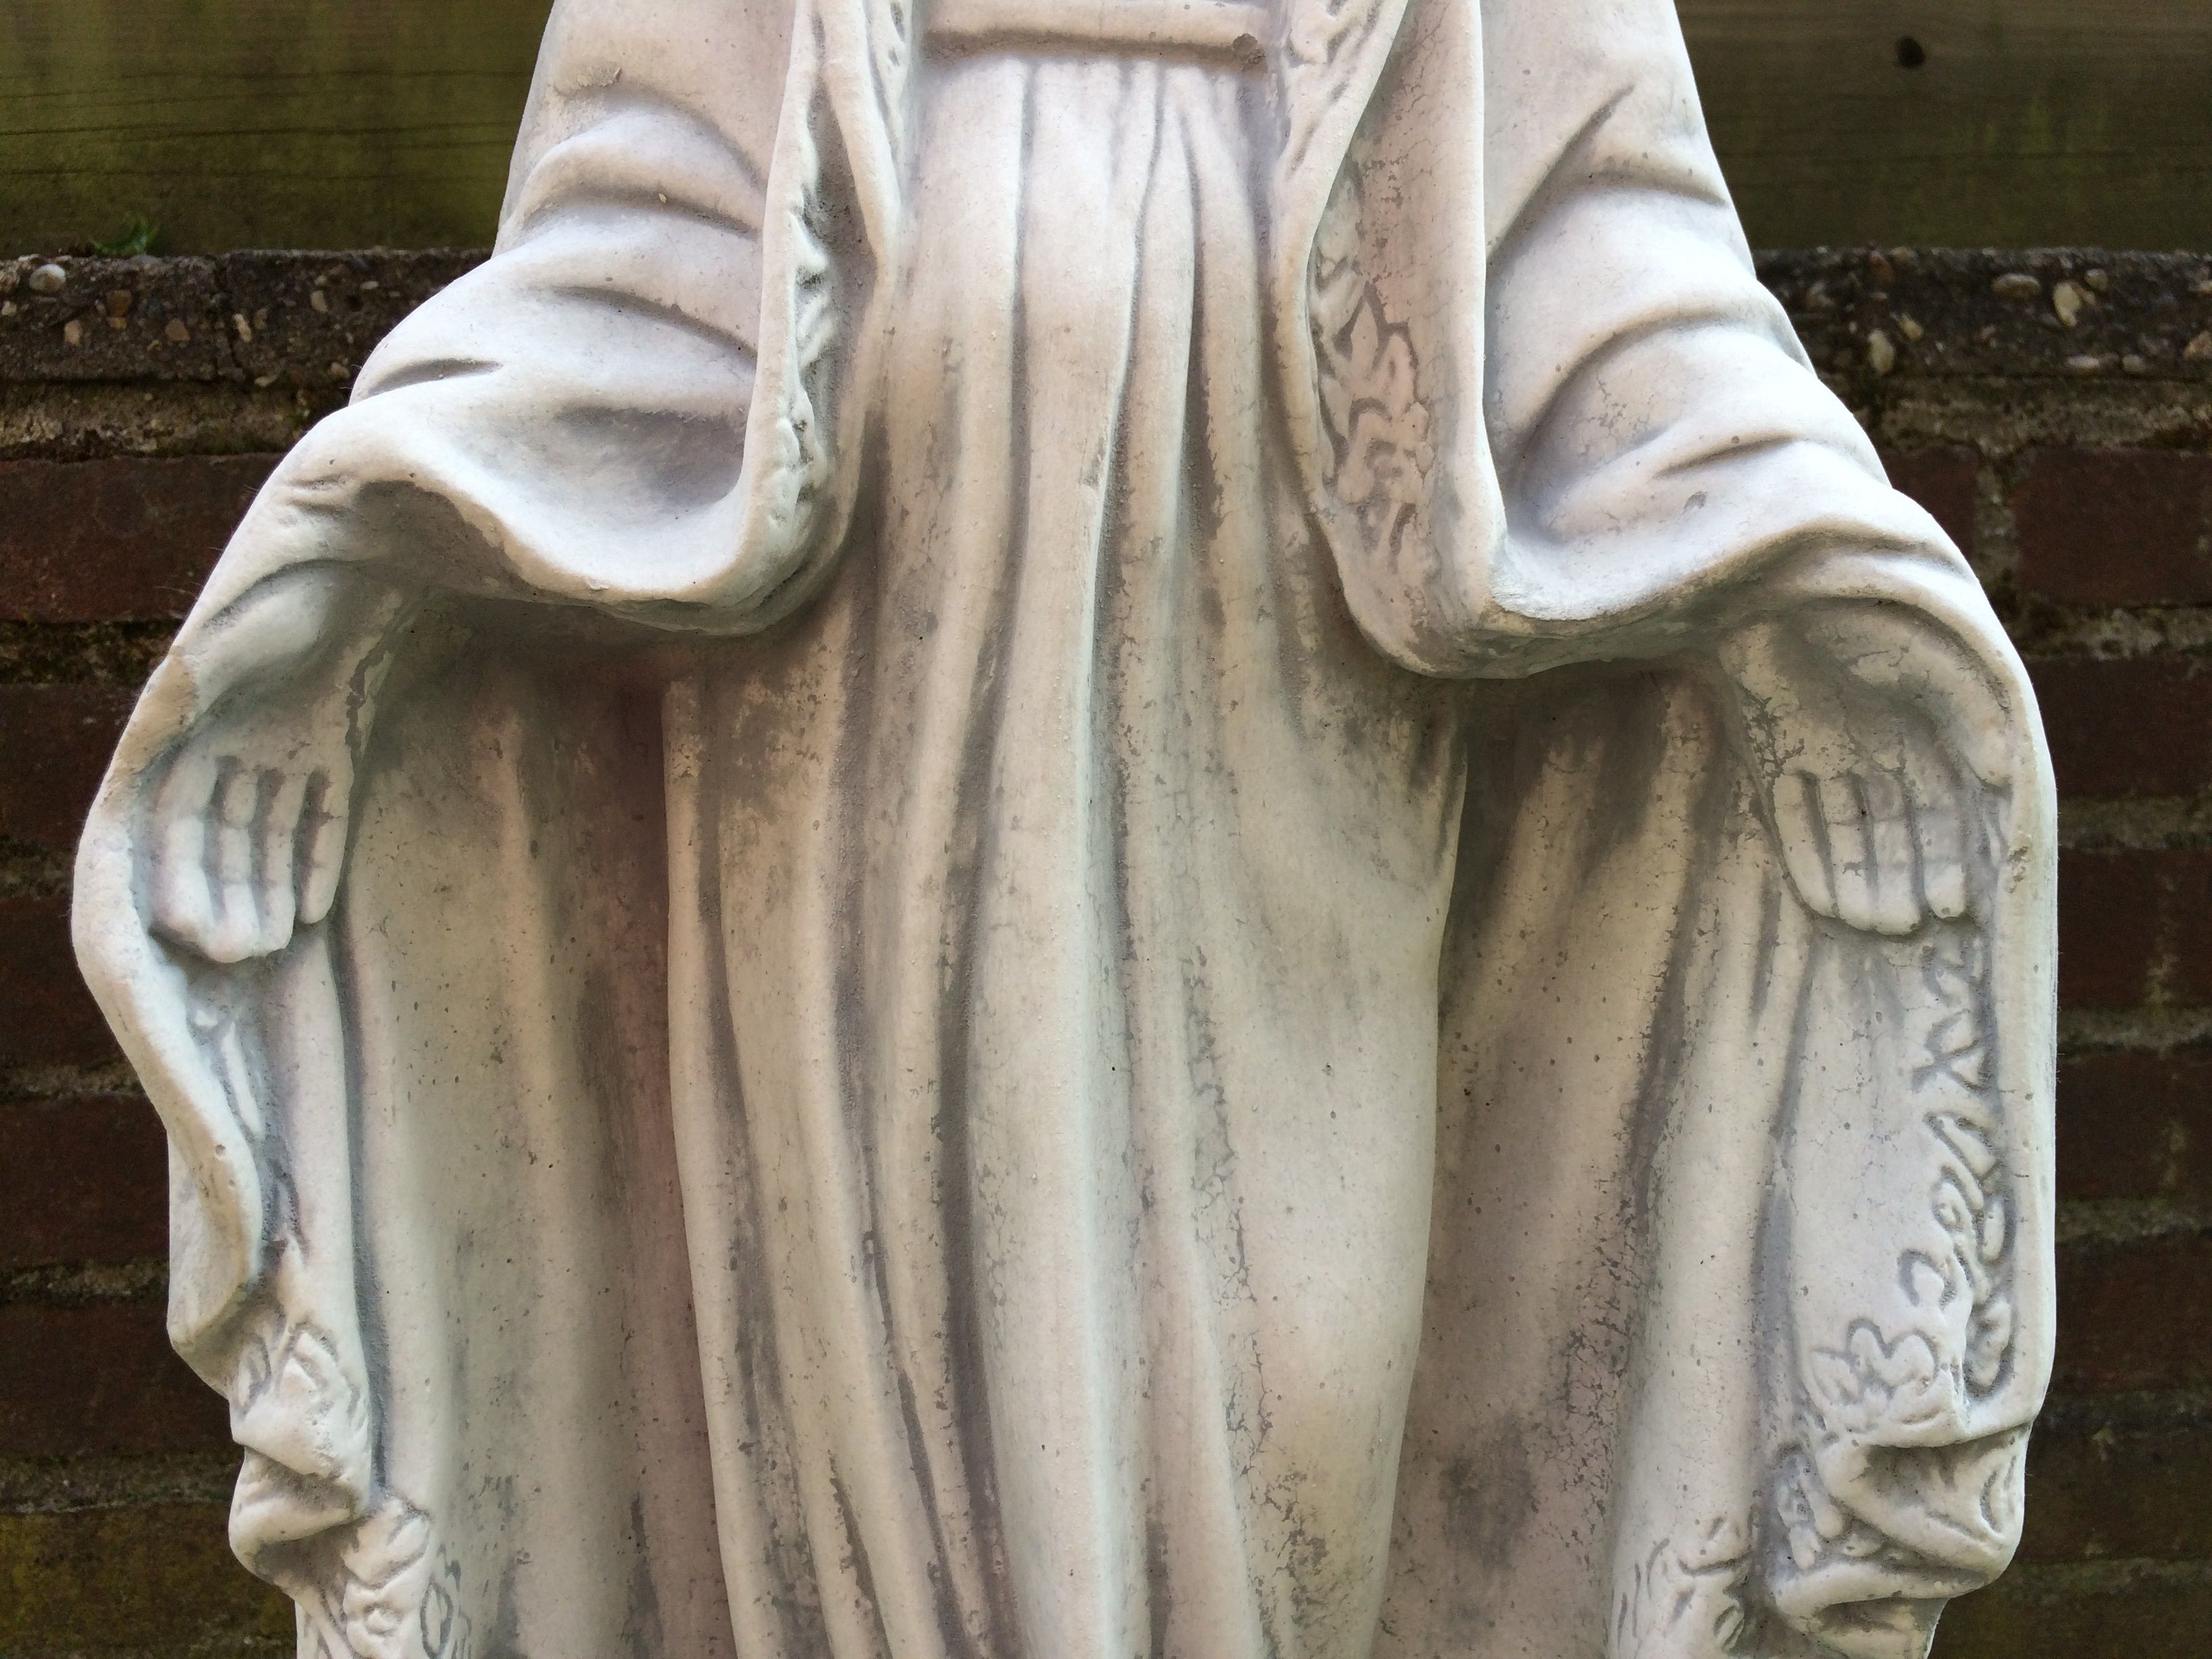 Maria beeld op sokkel, tuinbeeld massief gegoten steen, prachtig vormgegeven zwaar beeld.